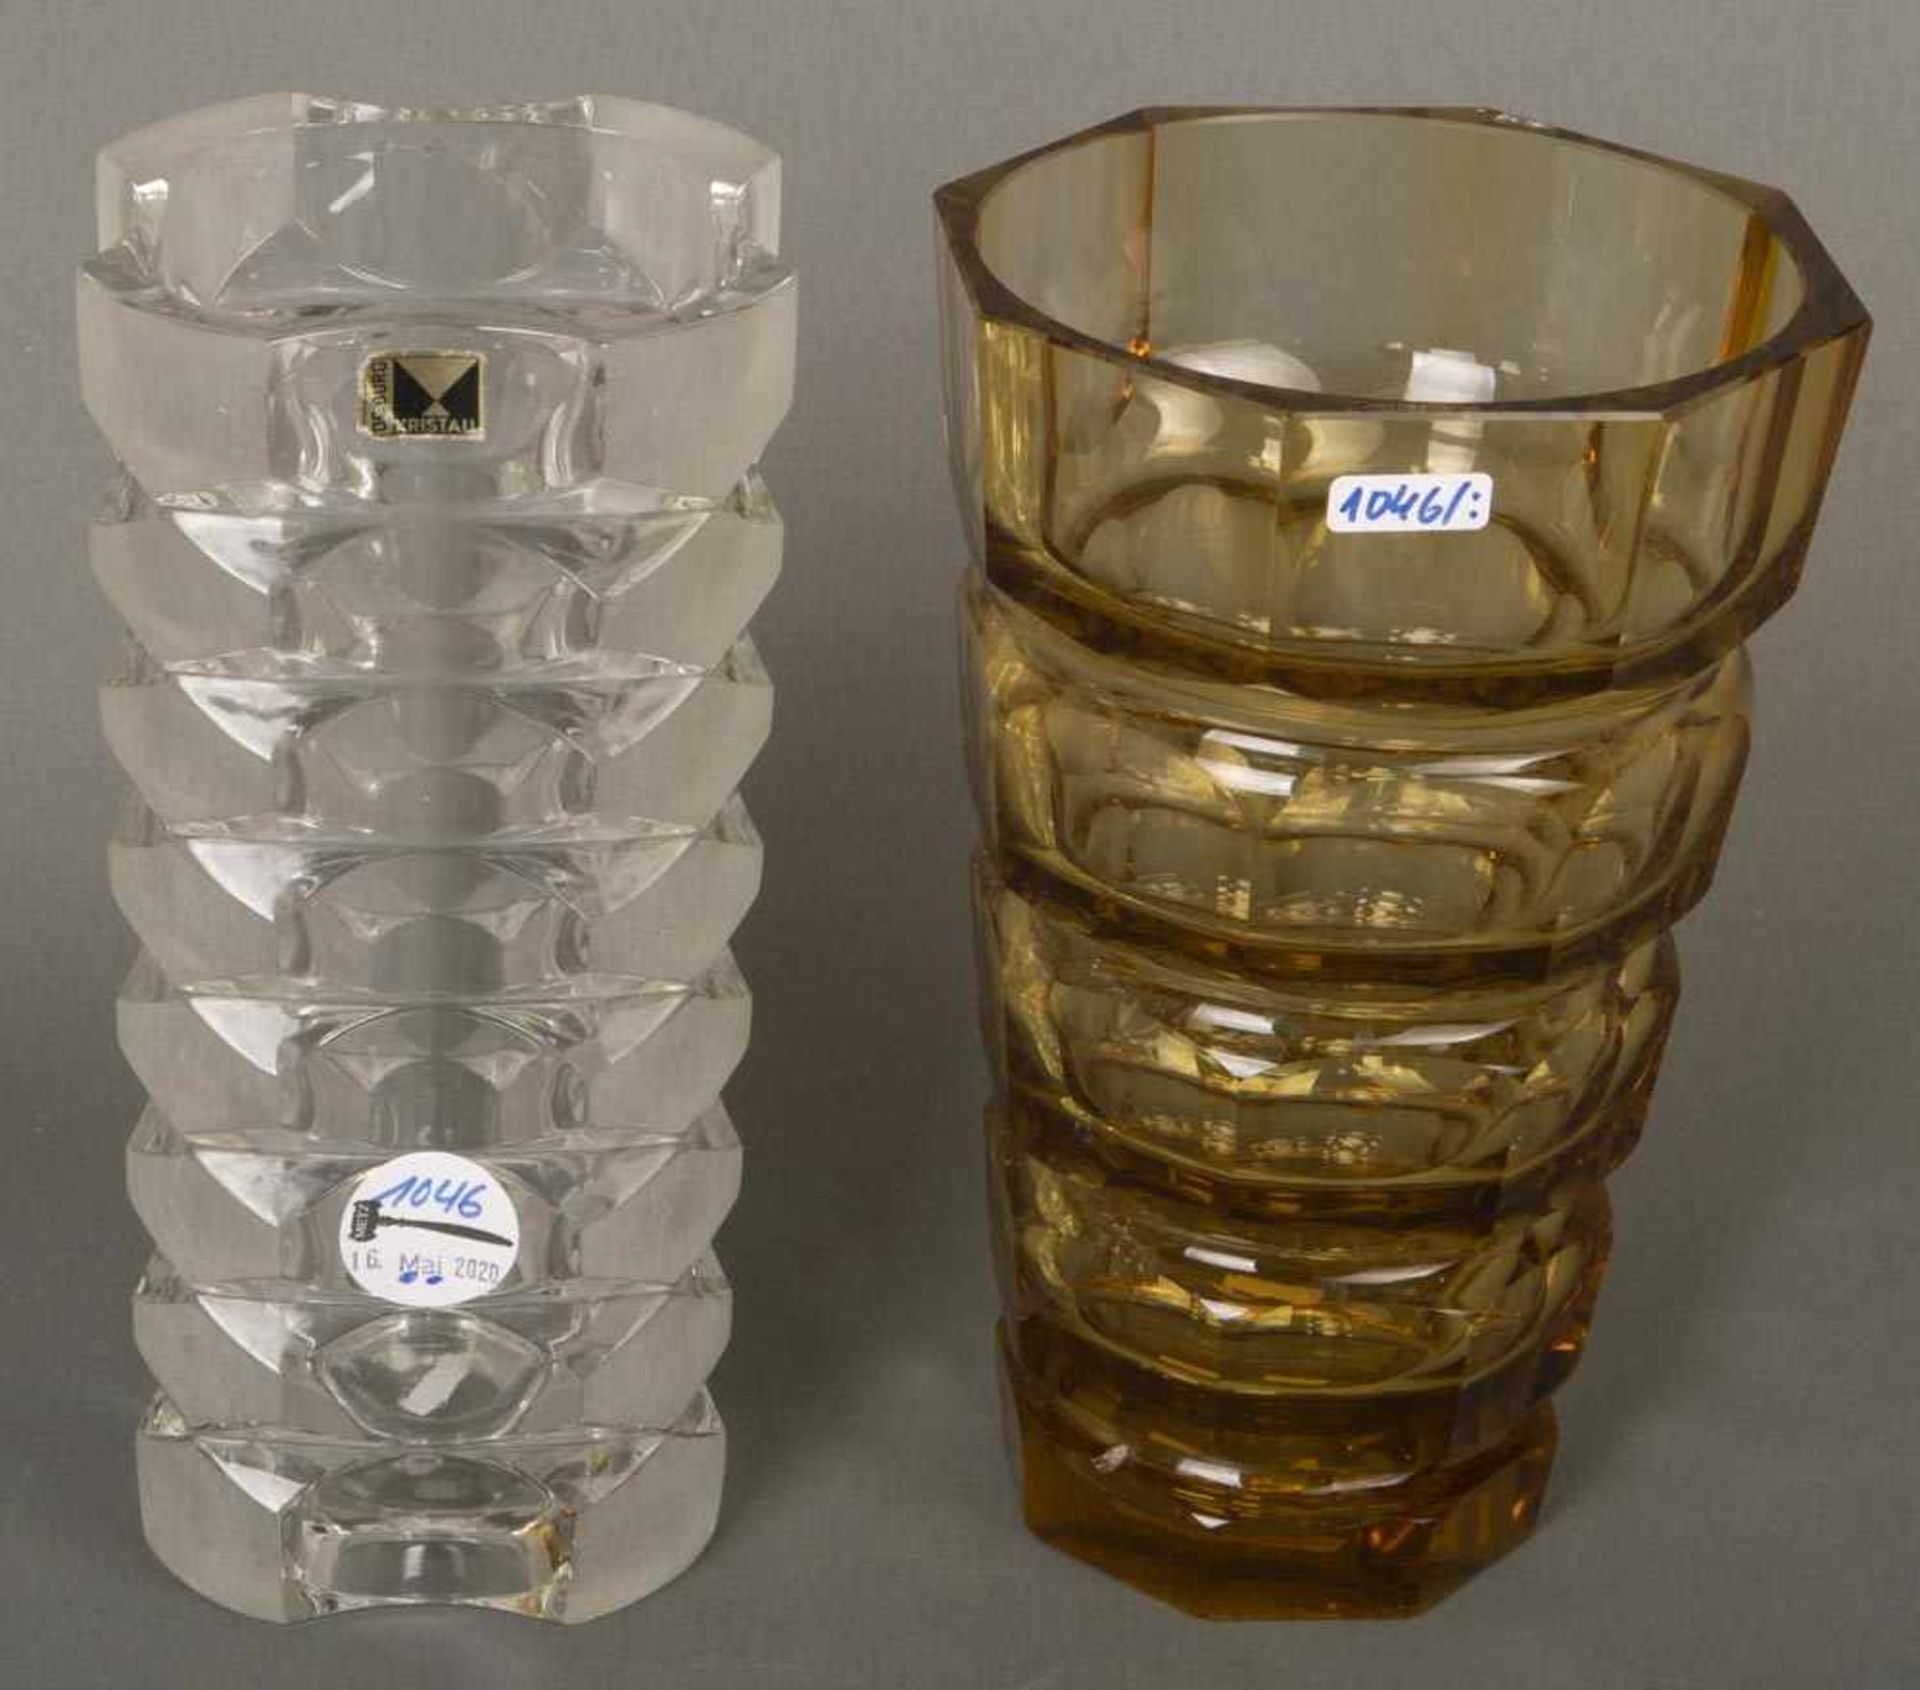 Zwei unterschiedliche Vasen, u.a. Bad Driburg 20. Jh. Farbloses bzw. honigfarbenes Glas, eine mit